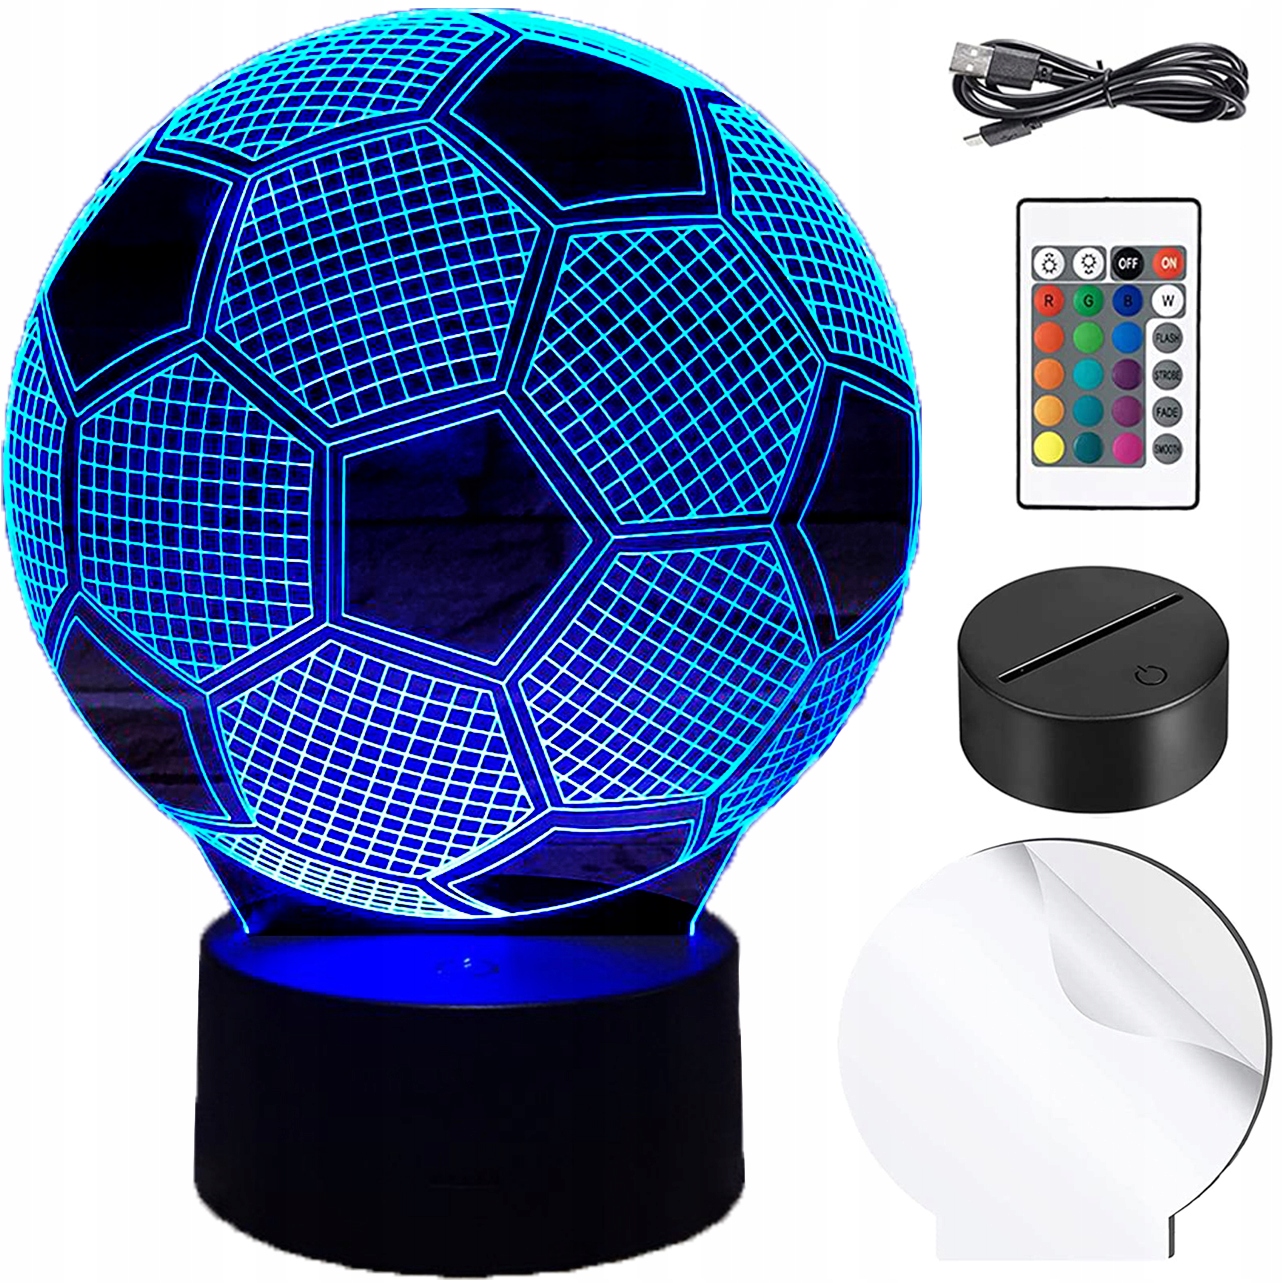 csodálatos gyermek éjszakai lámpa futball-labda formájában - 3D illúzió formájában